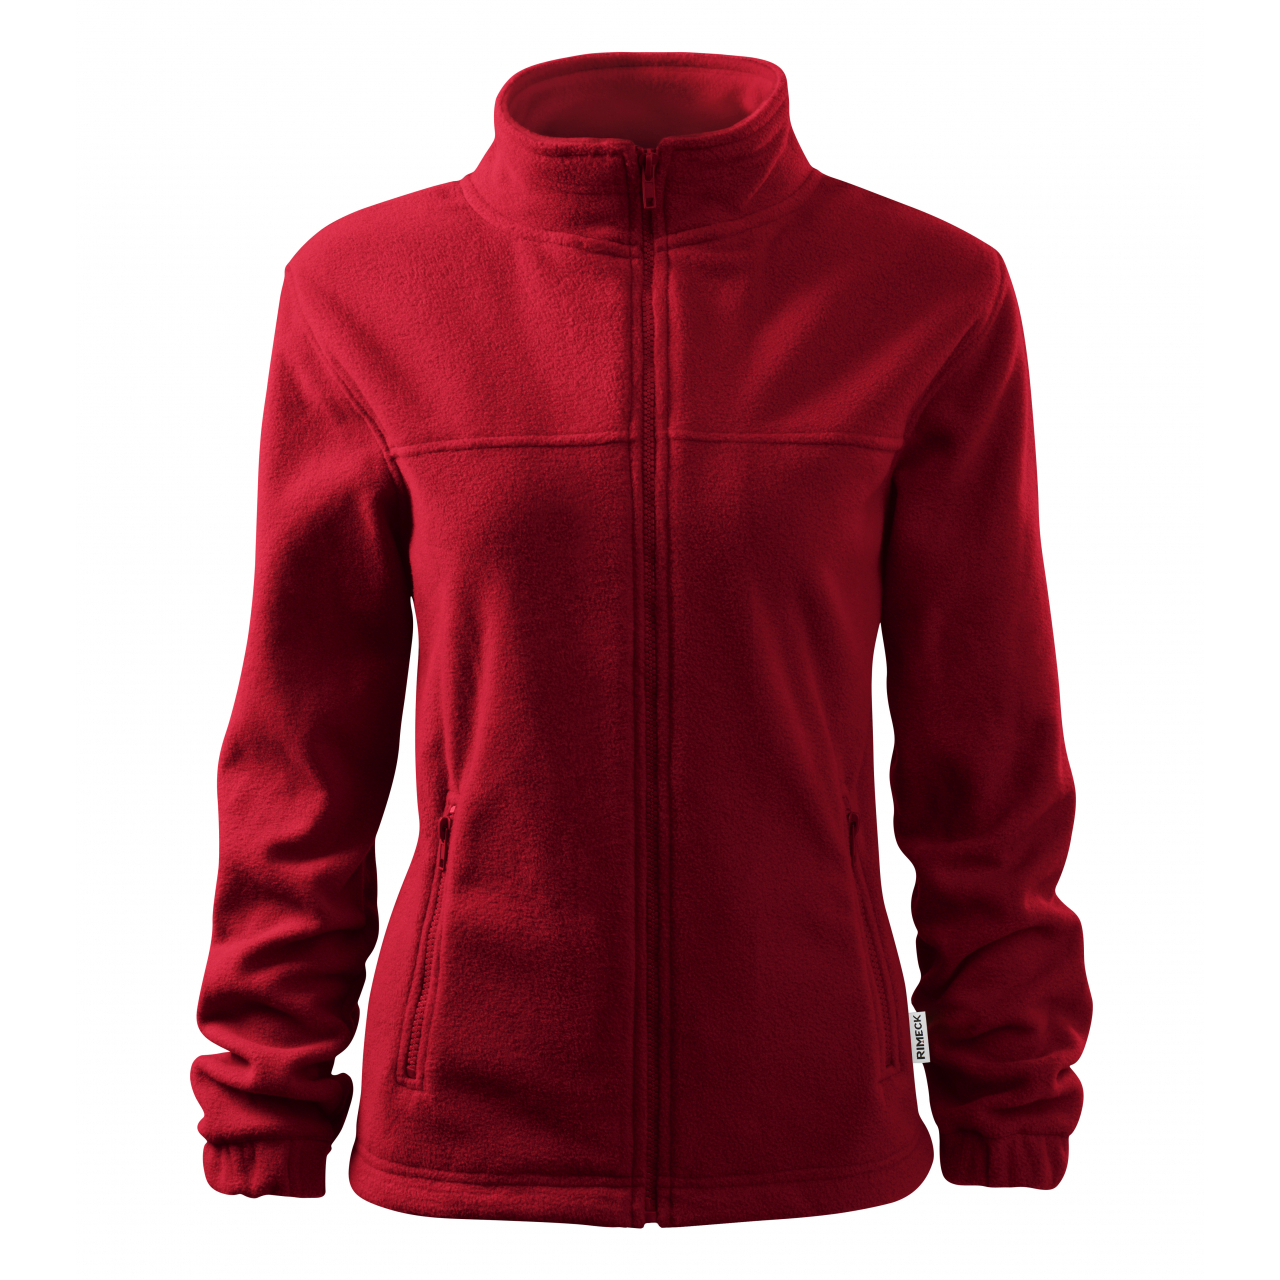 Mikina dámská fleecová Rimeck Jacket 504 - tmavě červená, XL